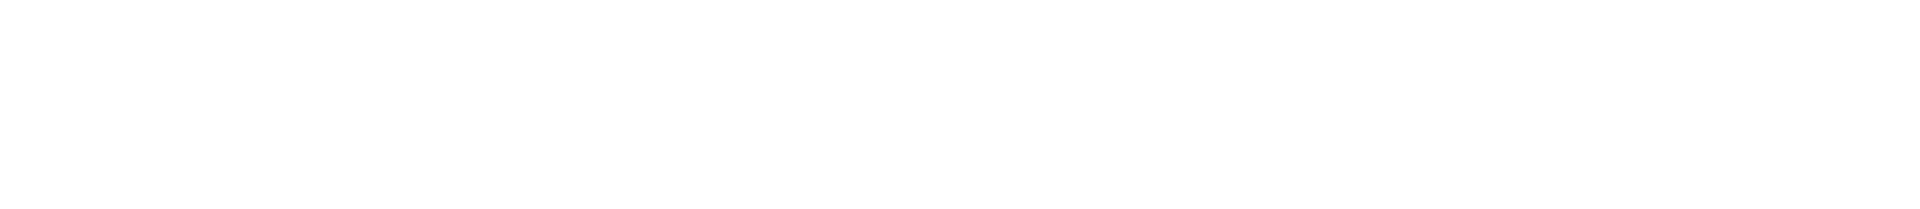 Jaspersoft Logo - Audaxis - TIBCO Jaspersoft